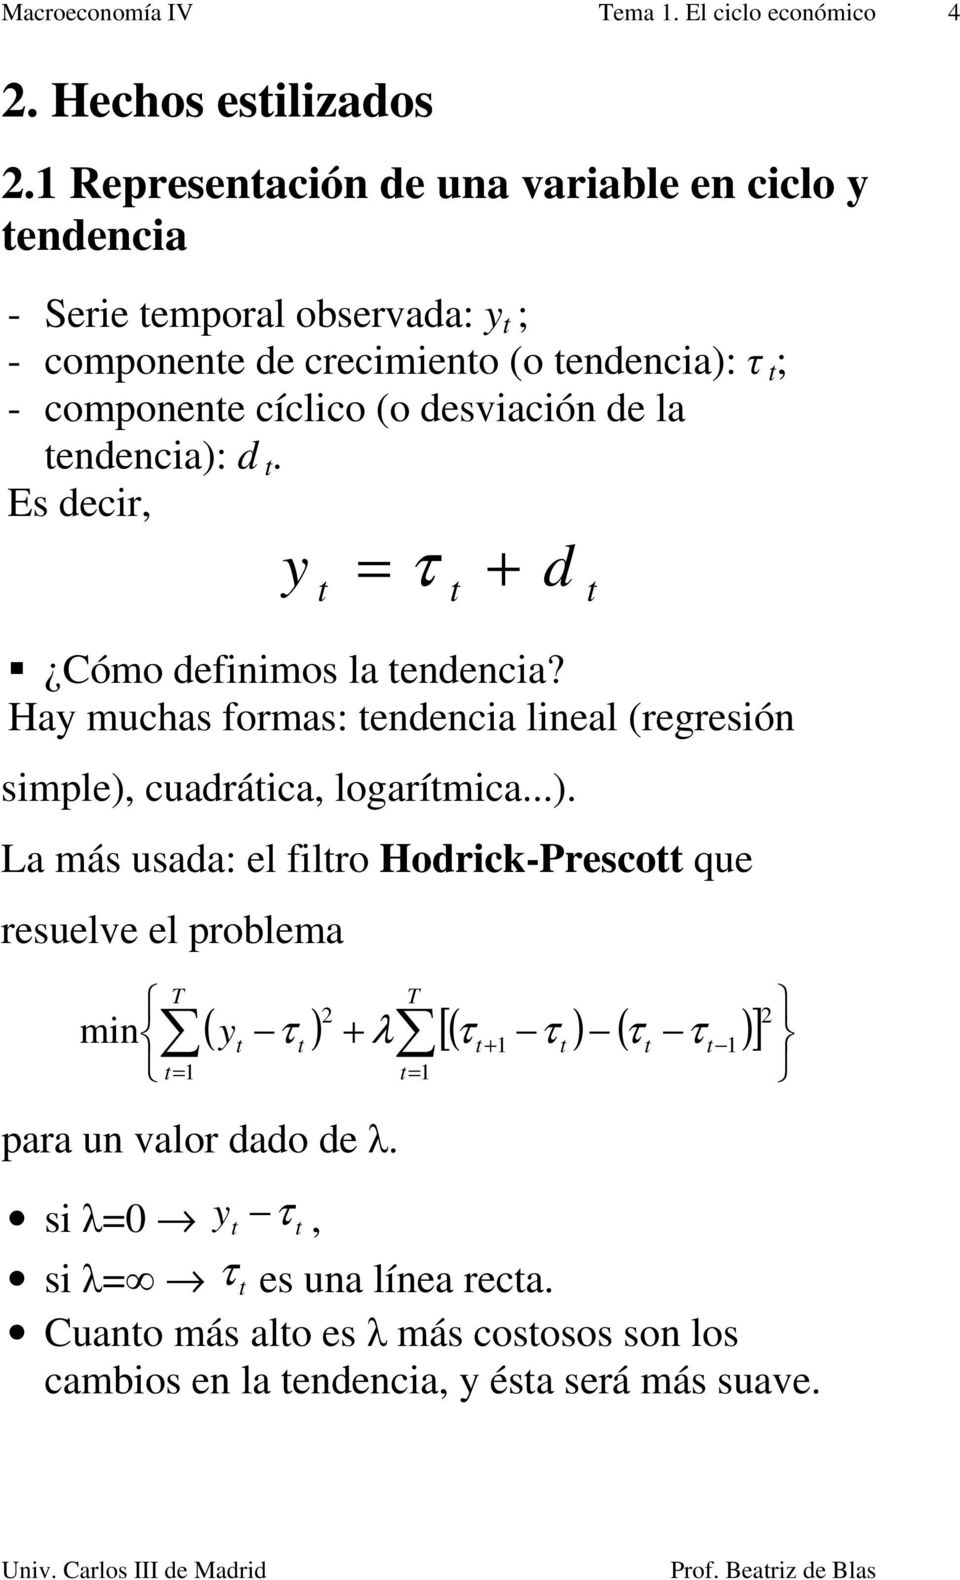 desviación de la endencia: d. Es decir y τ Cómo definimos la endencia? Hay muchas formas: endencia lineal regresión d simple cuadráica logarímica.